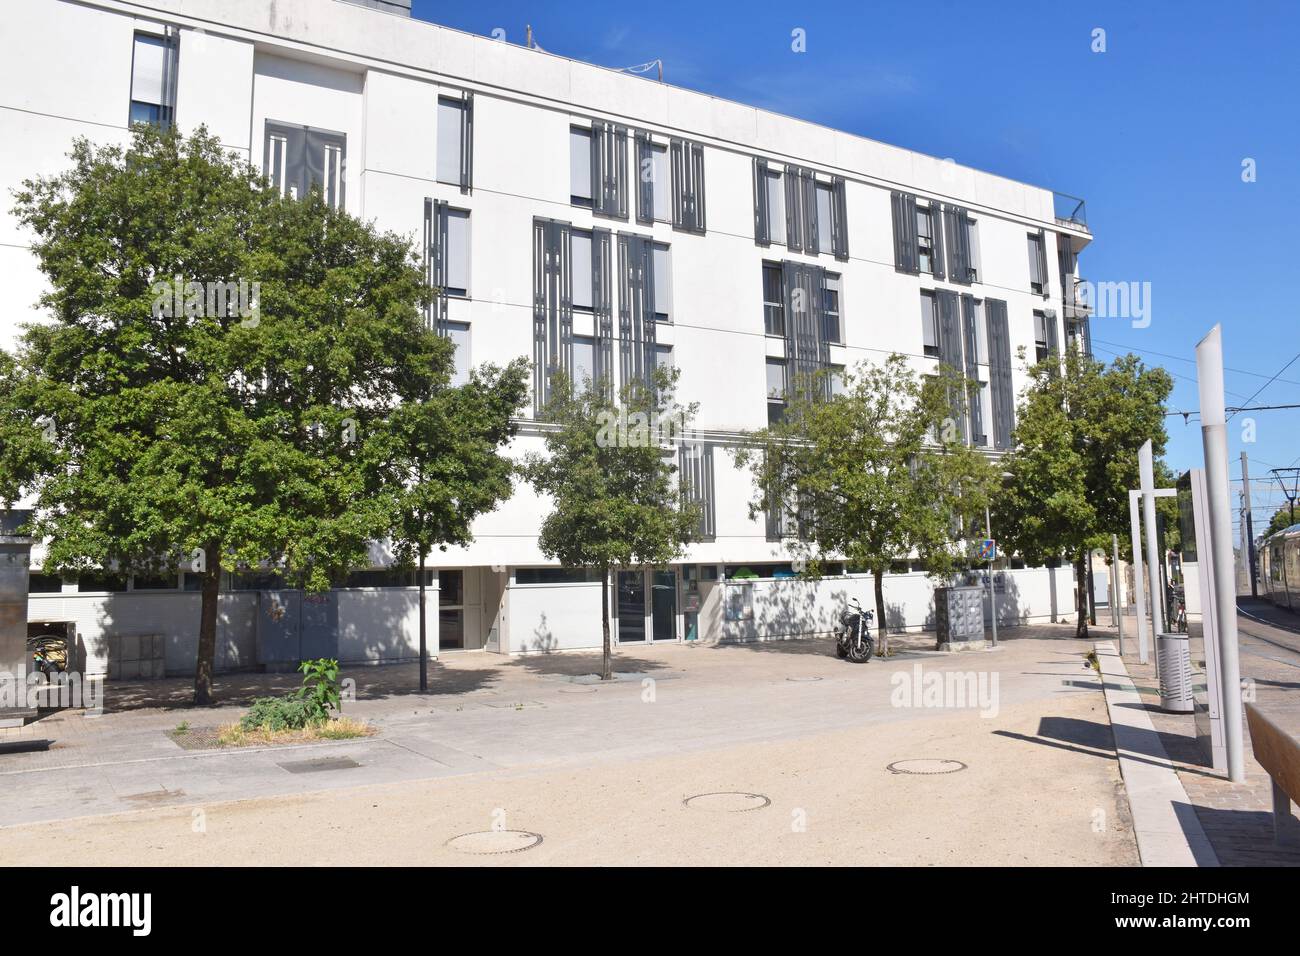 School School Group Saint-Louis - Sainte-Teresa, aprivate catholic school, Bordeaux, France. Stock Photo